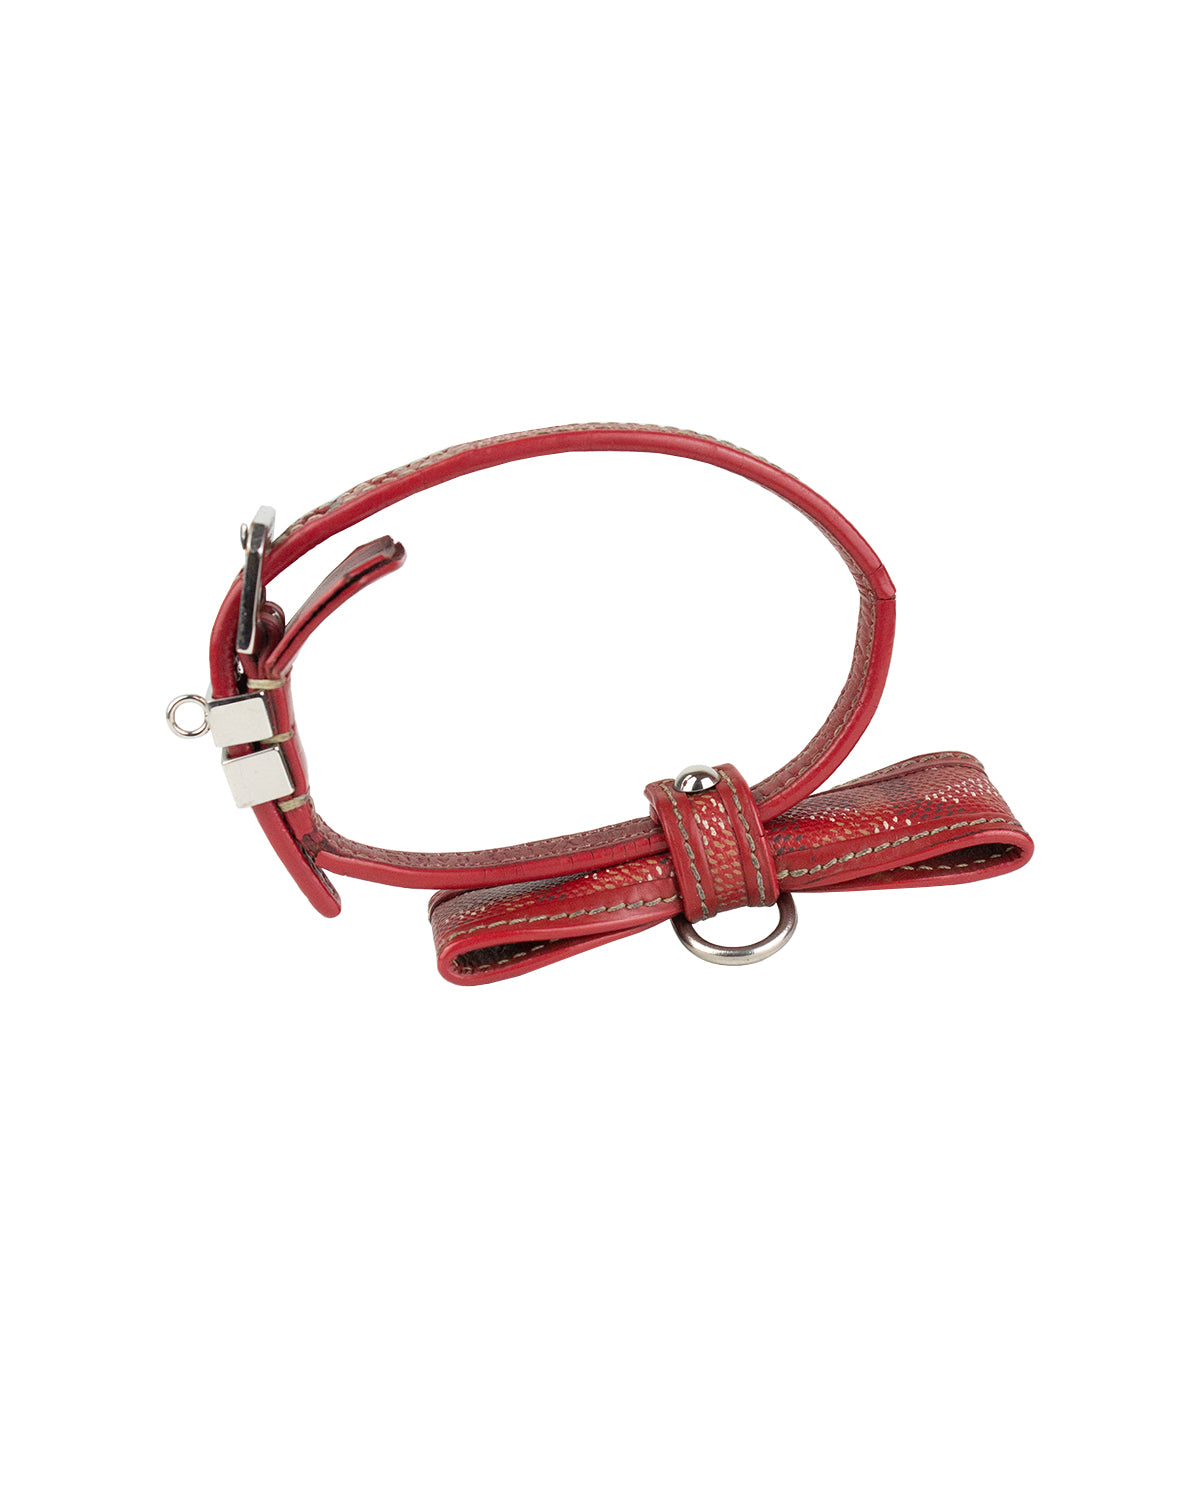 Goyard Goyardine Dog Leash - Red Pet Accessories, Decor & Accessories -  GOY31870